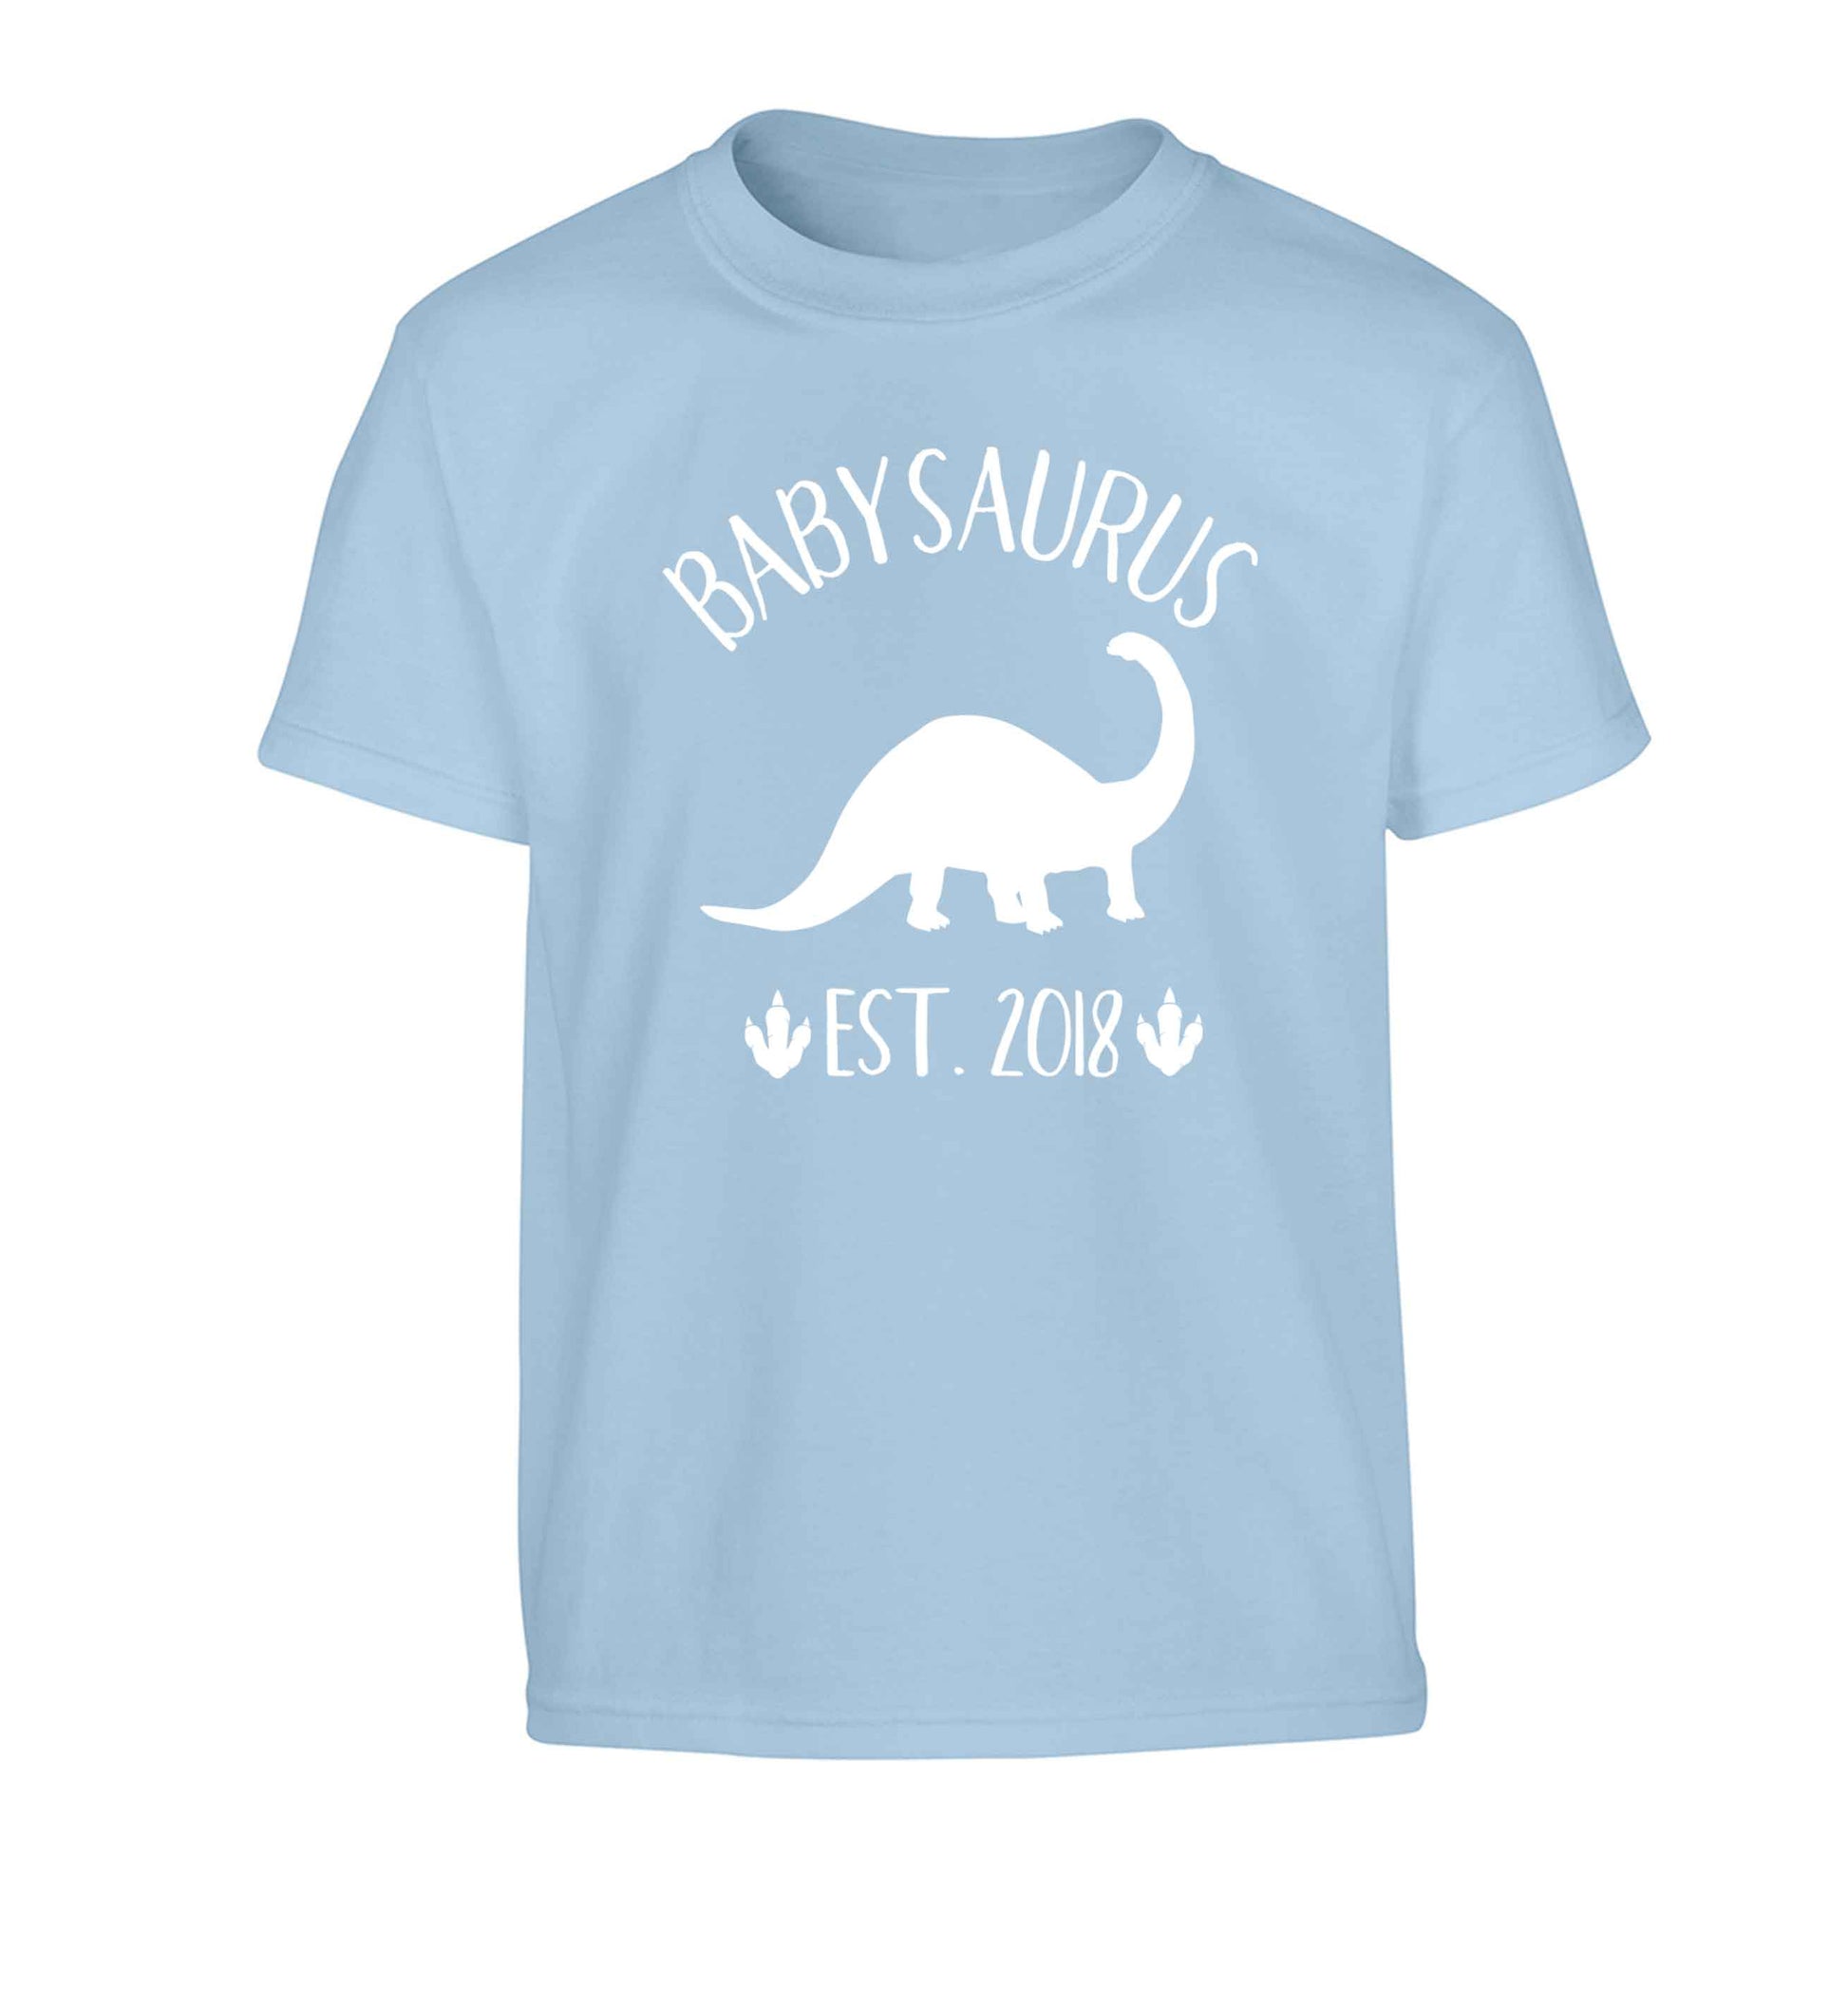 Personalised babysaurus since (custom date) Children's light blue Tshirt 12-13 Years